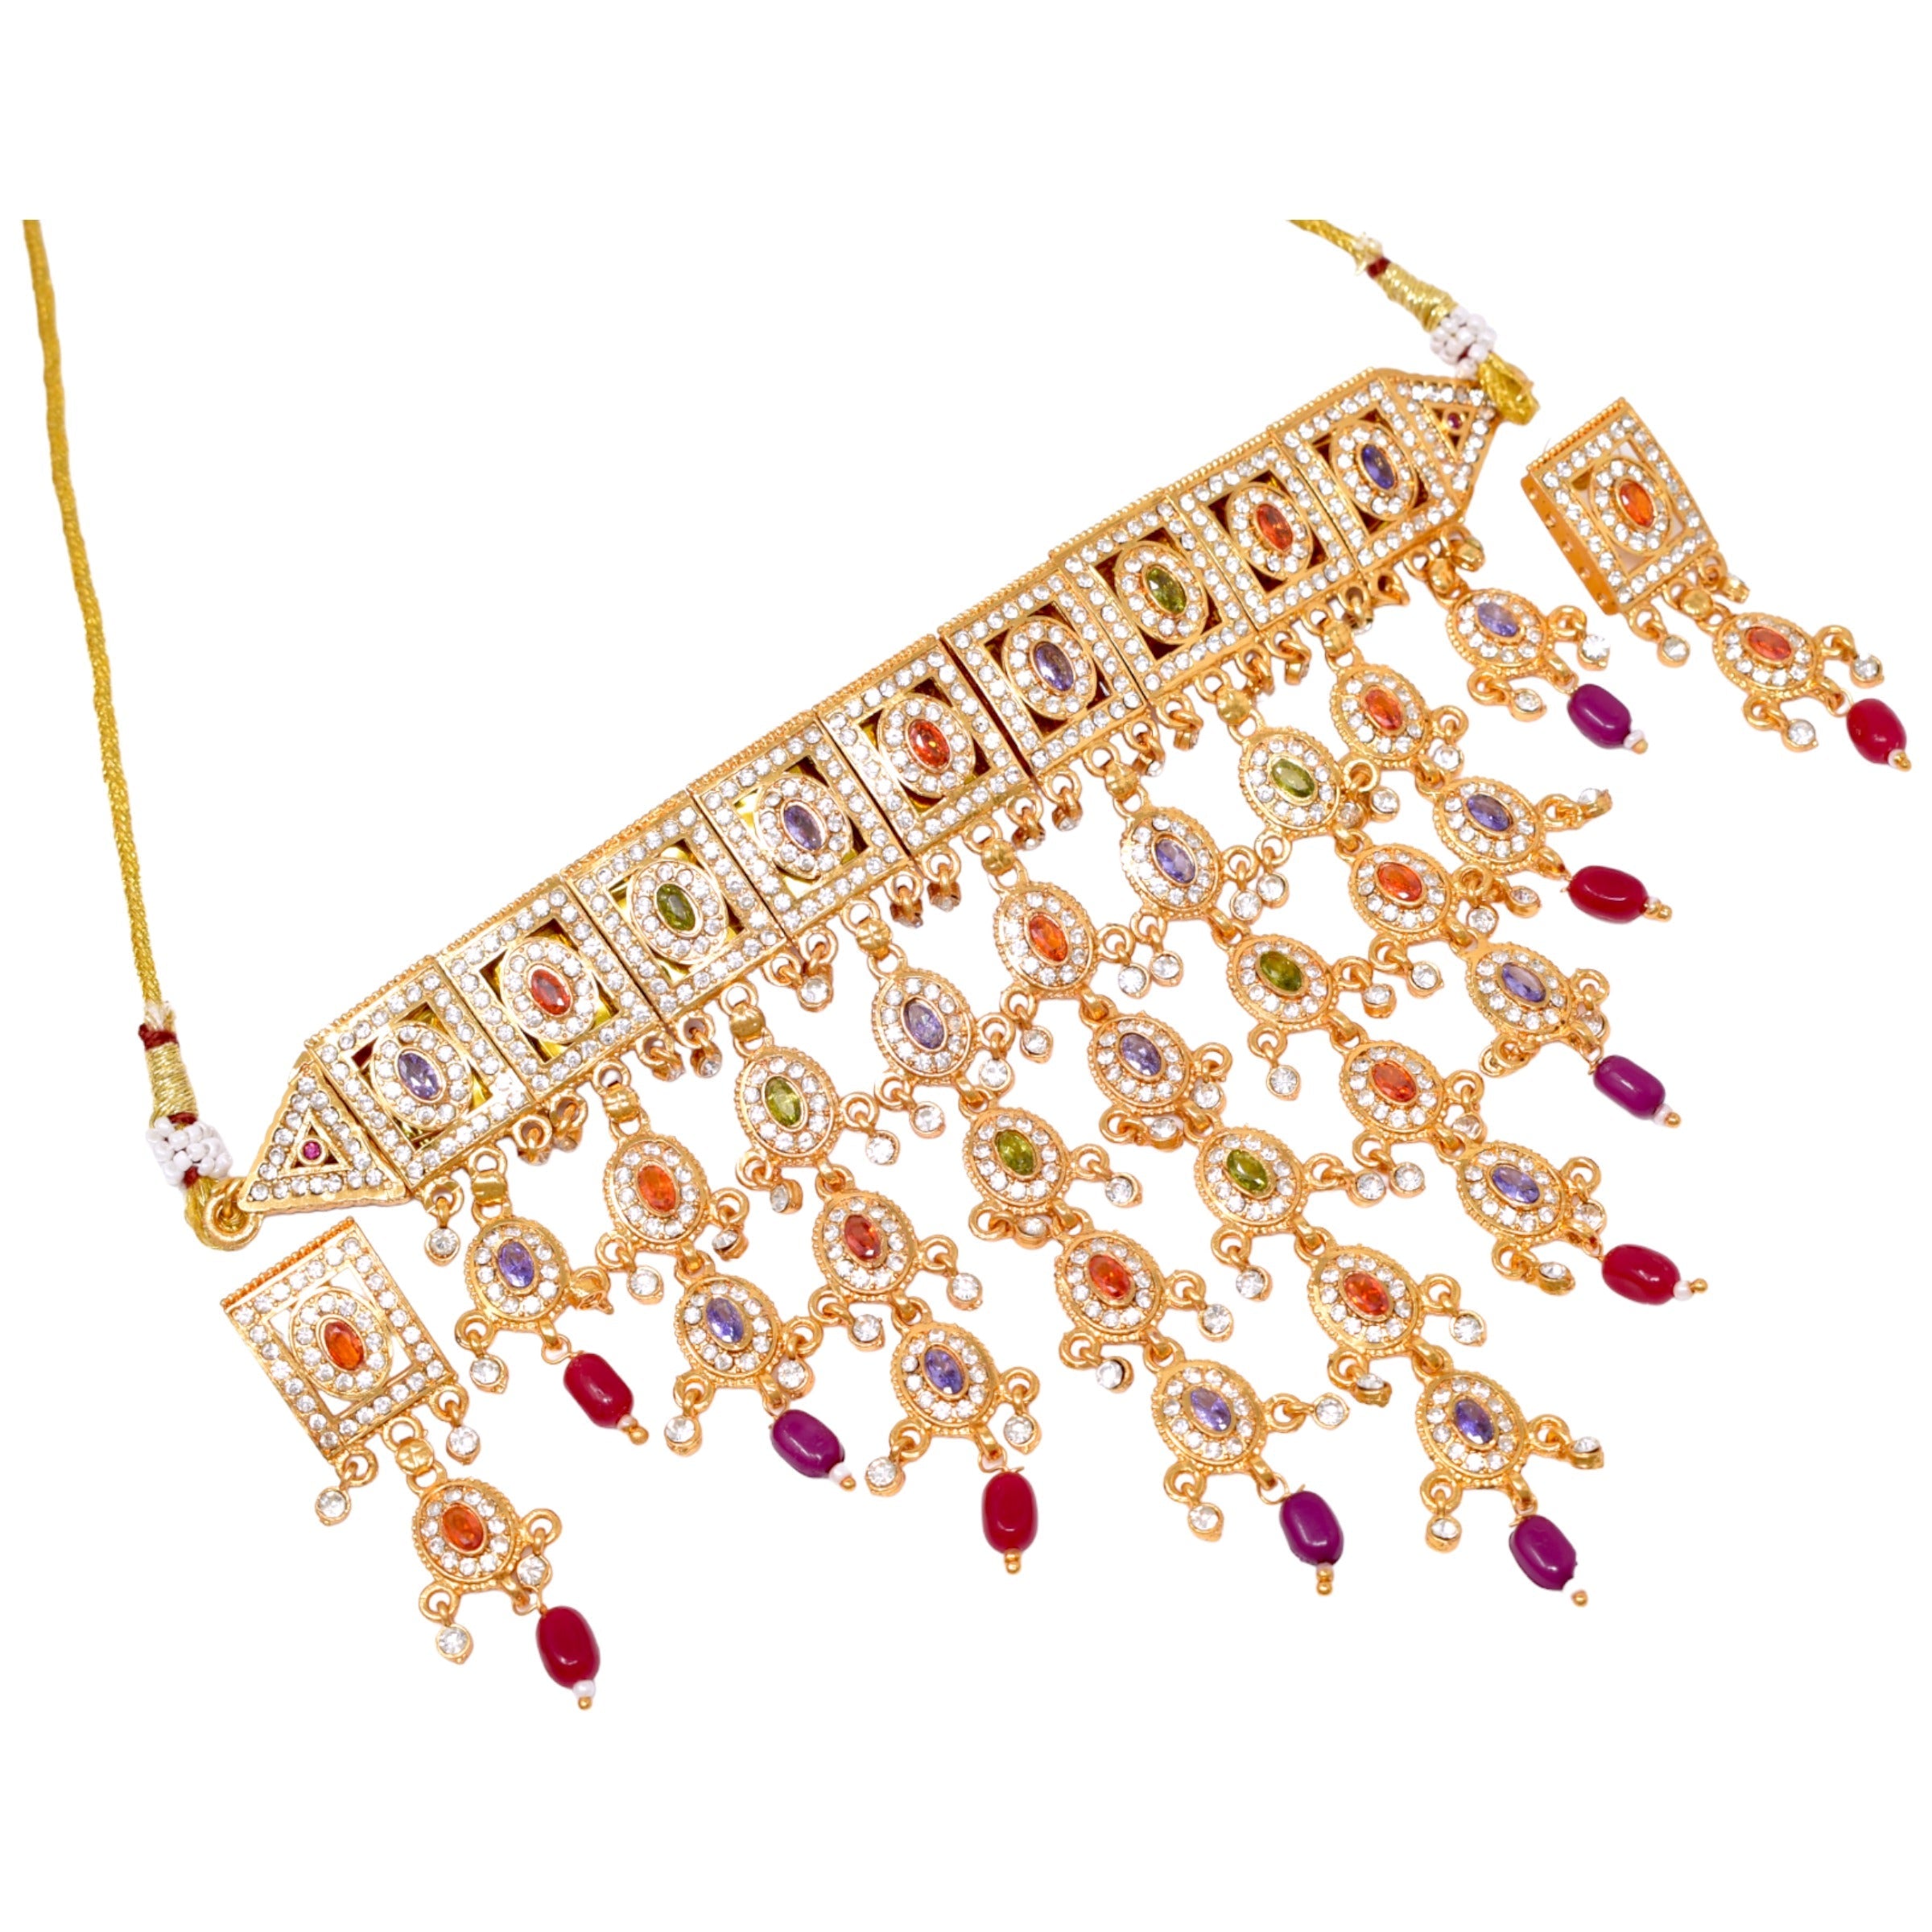 rajasthani aad jewellery design